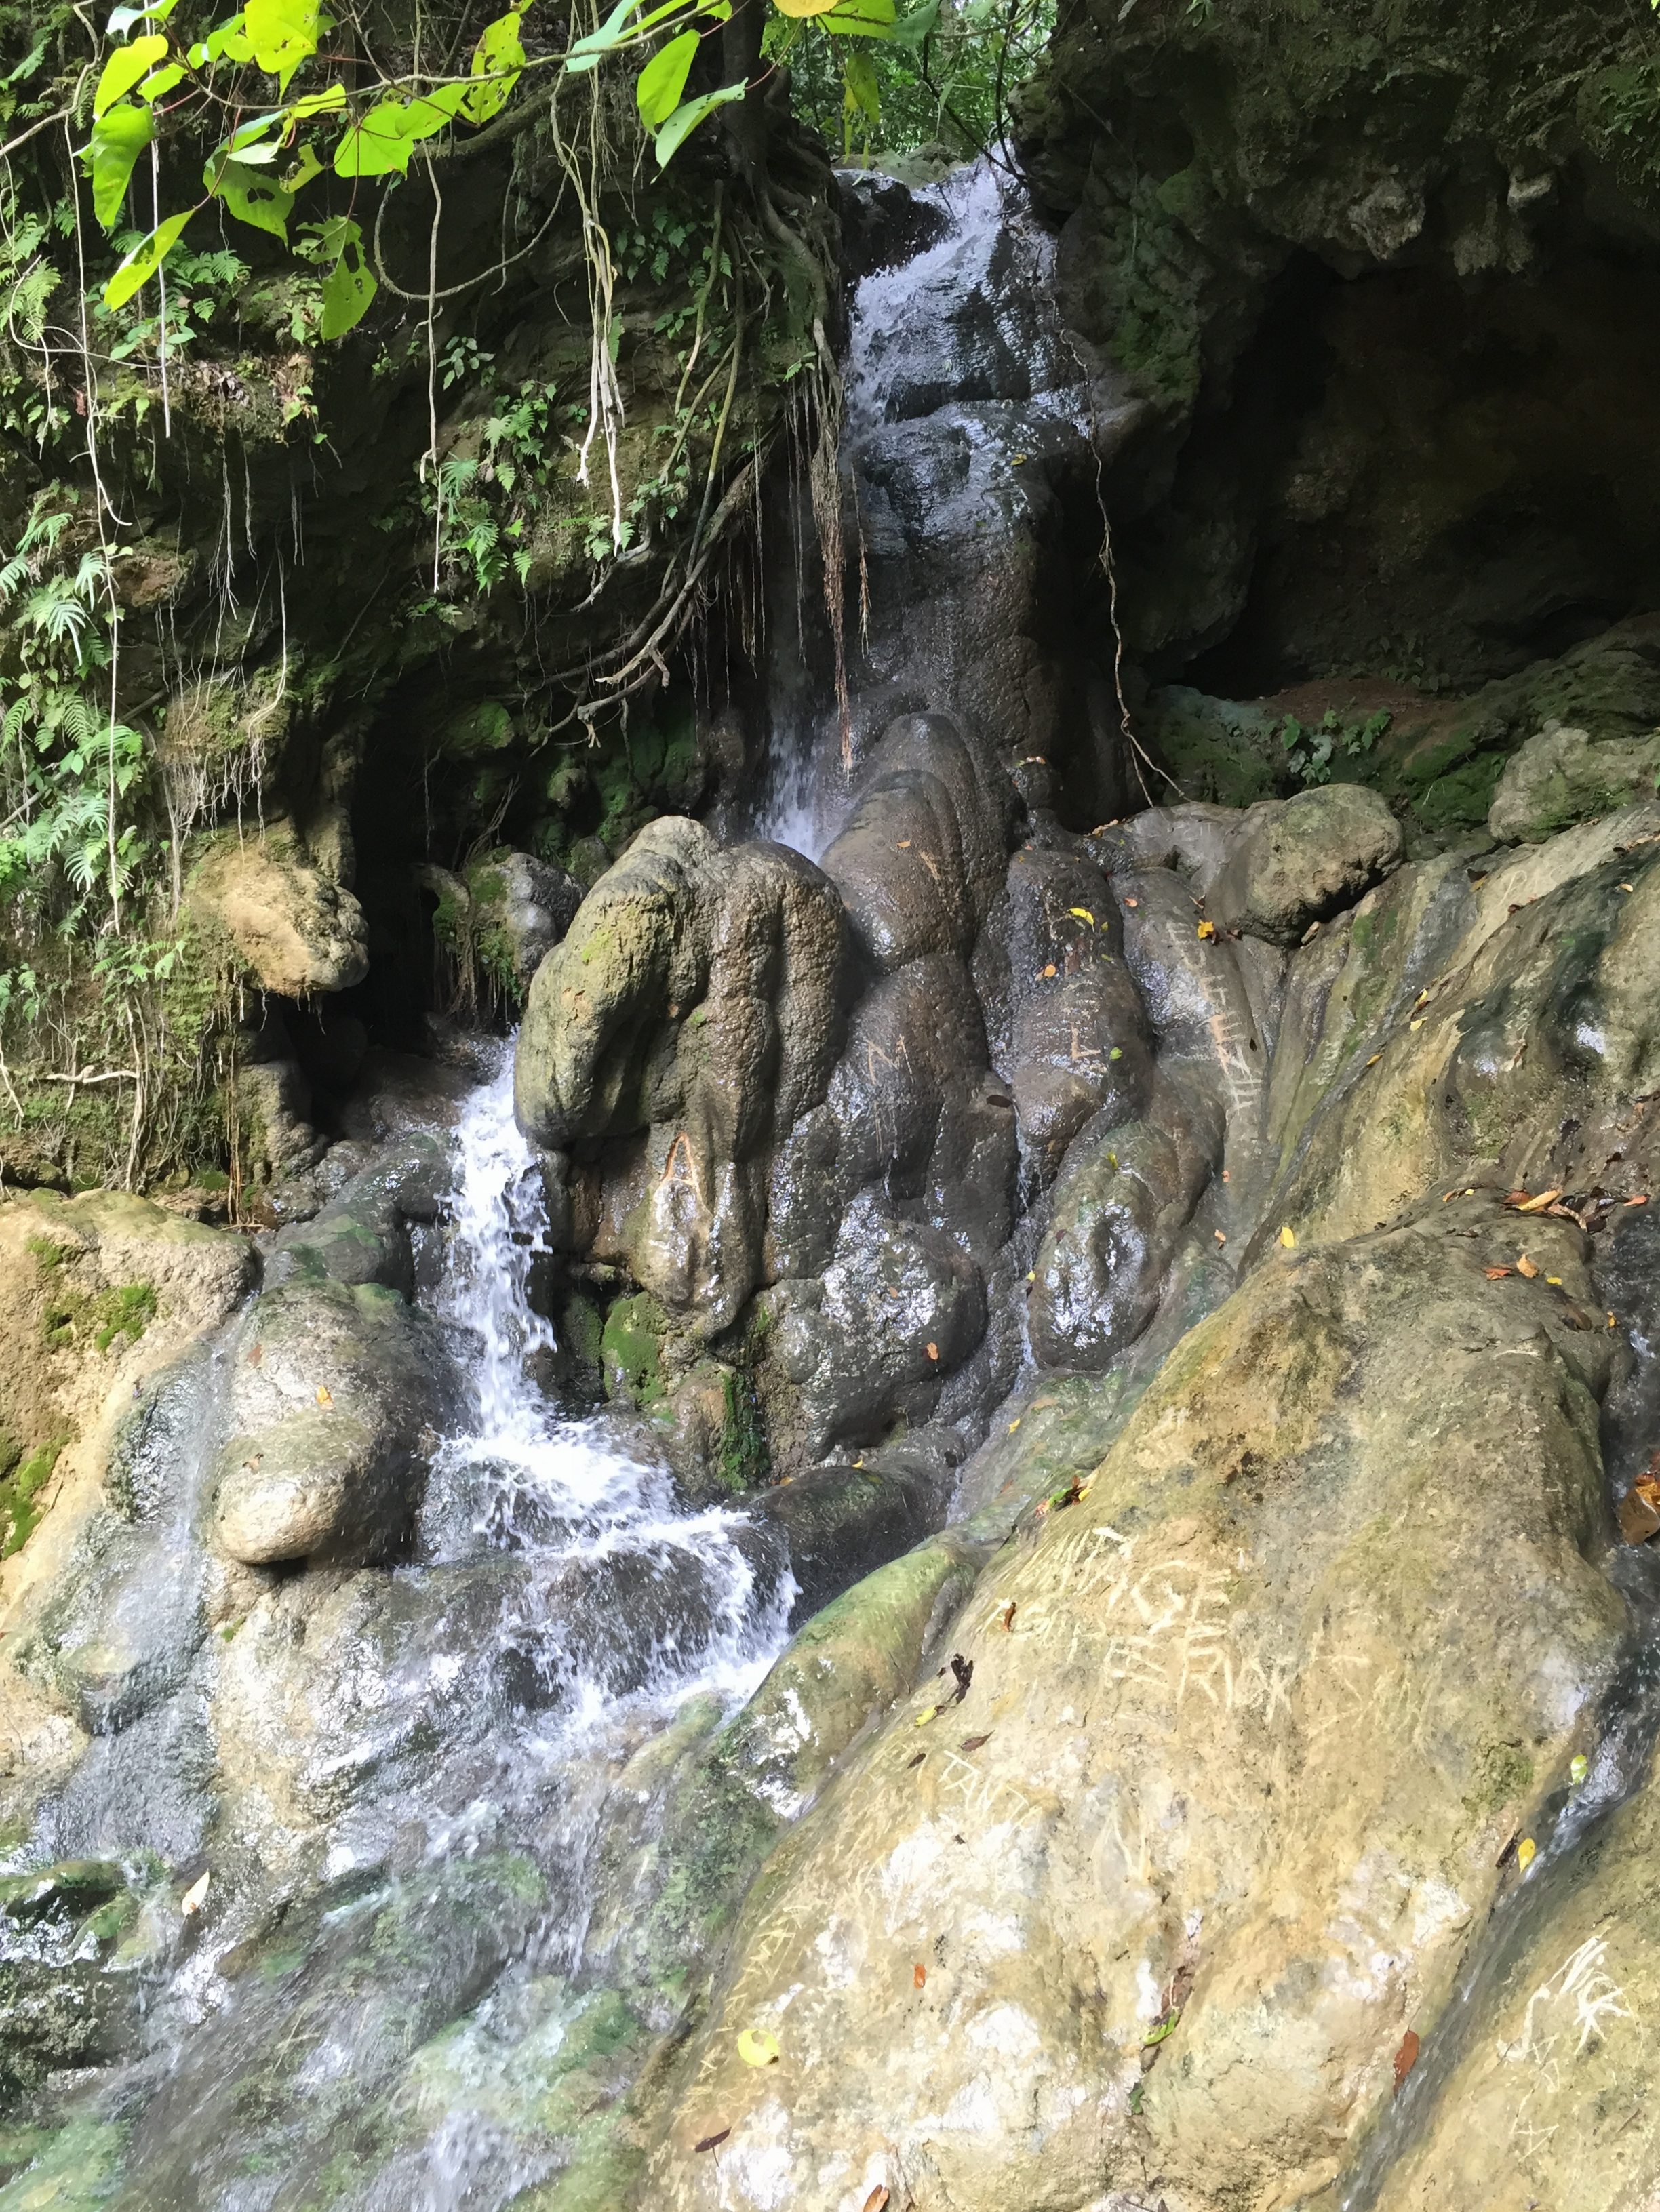 daranak falls tanay rizal smaller waterfalls